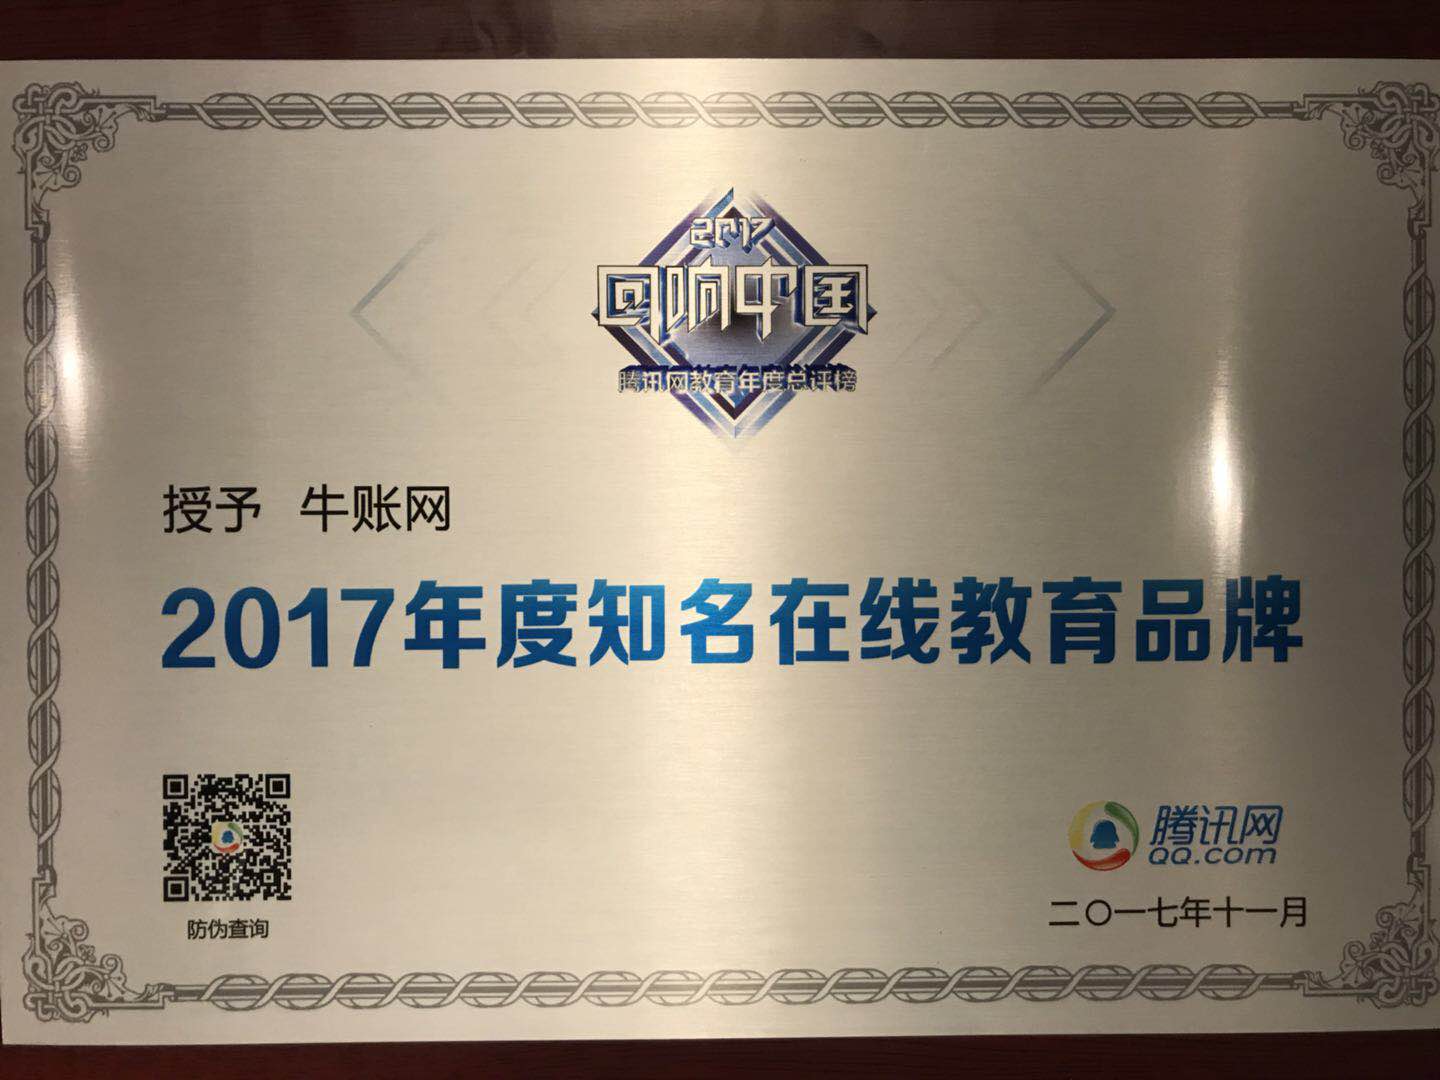 牛账网荣膺腾讯2017"回响中国"教育年度总评榜之“知名在线教育品牌”大奖